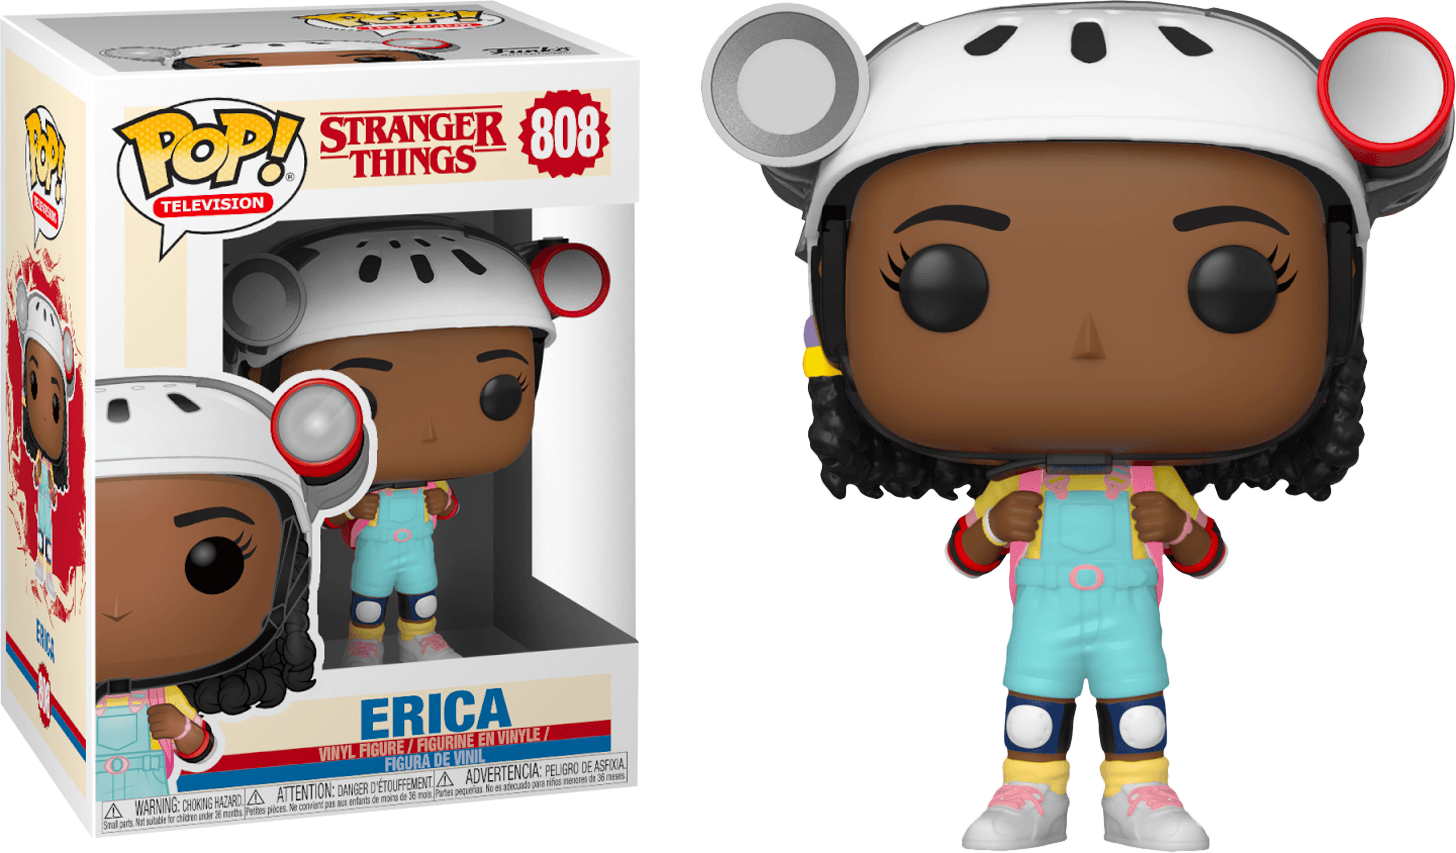 Funko Pop! Stranger Things 3 - Erica #808